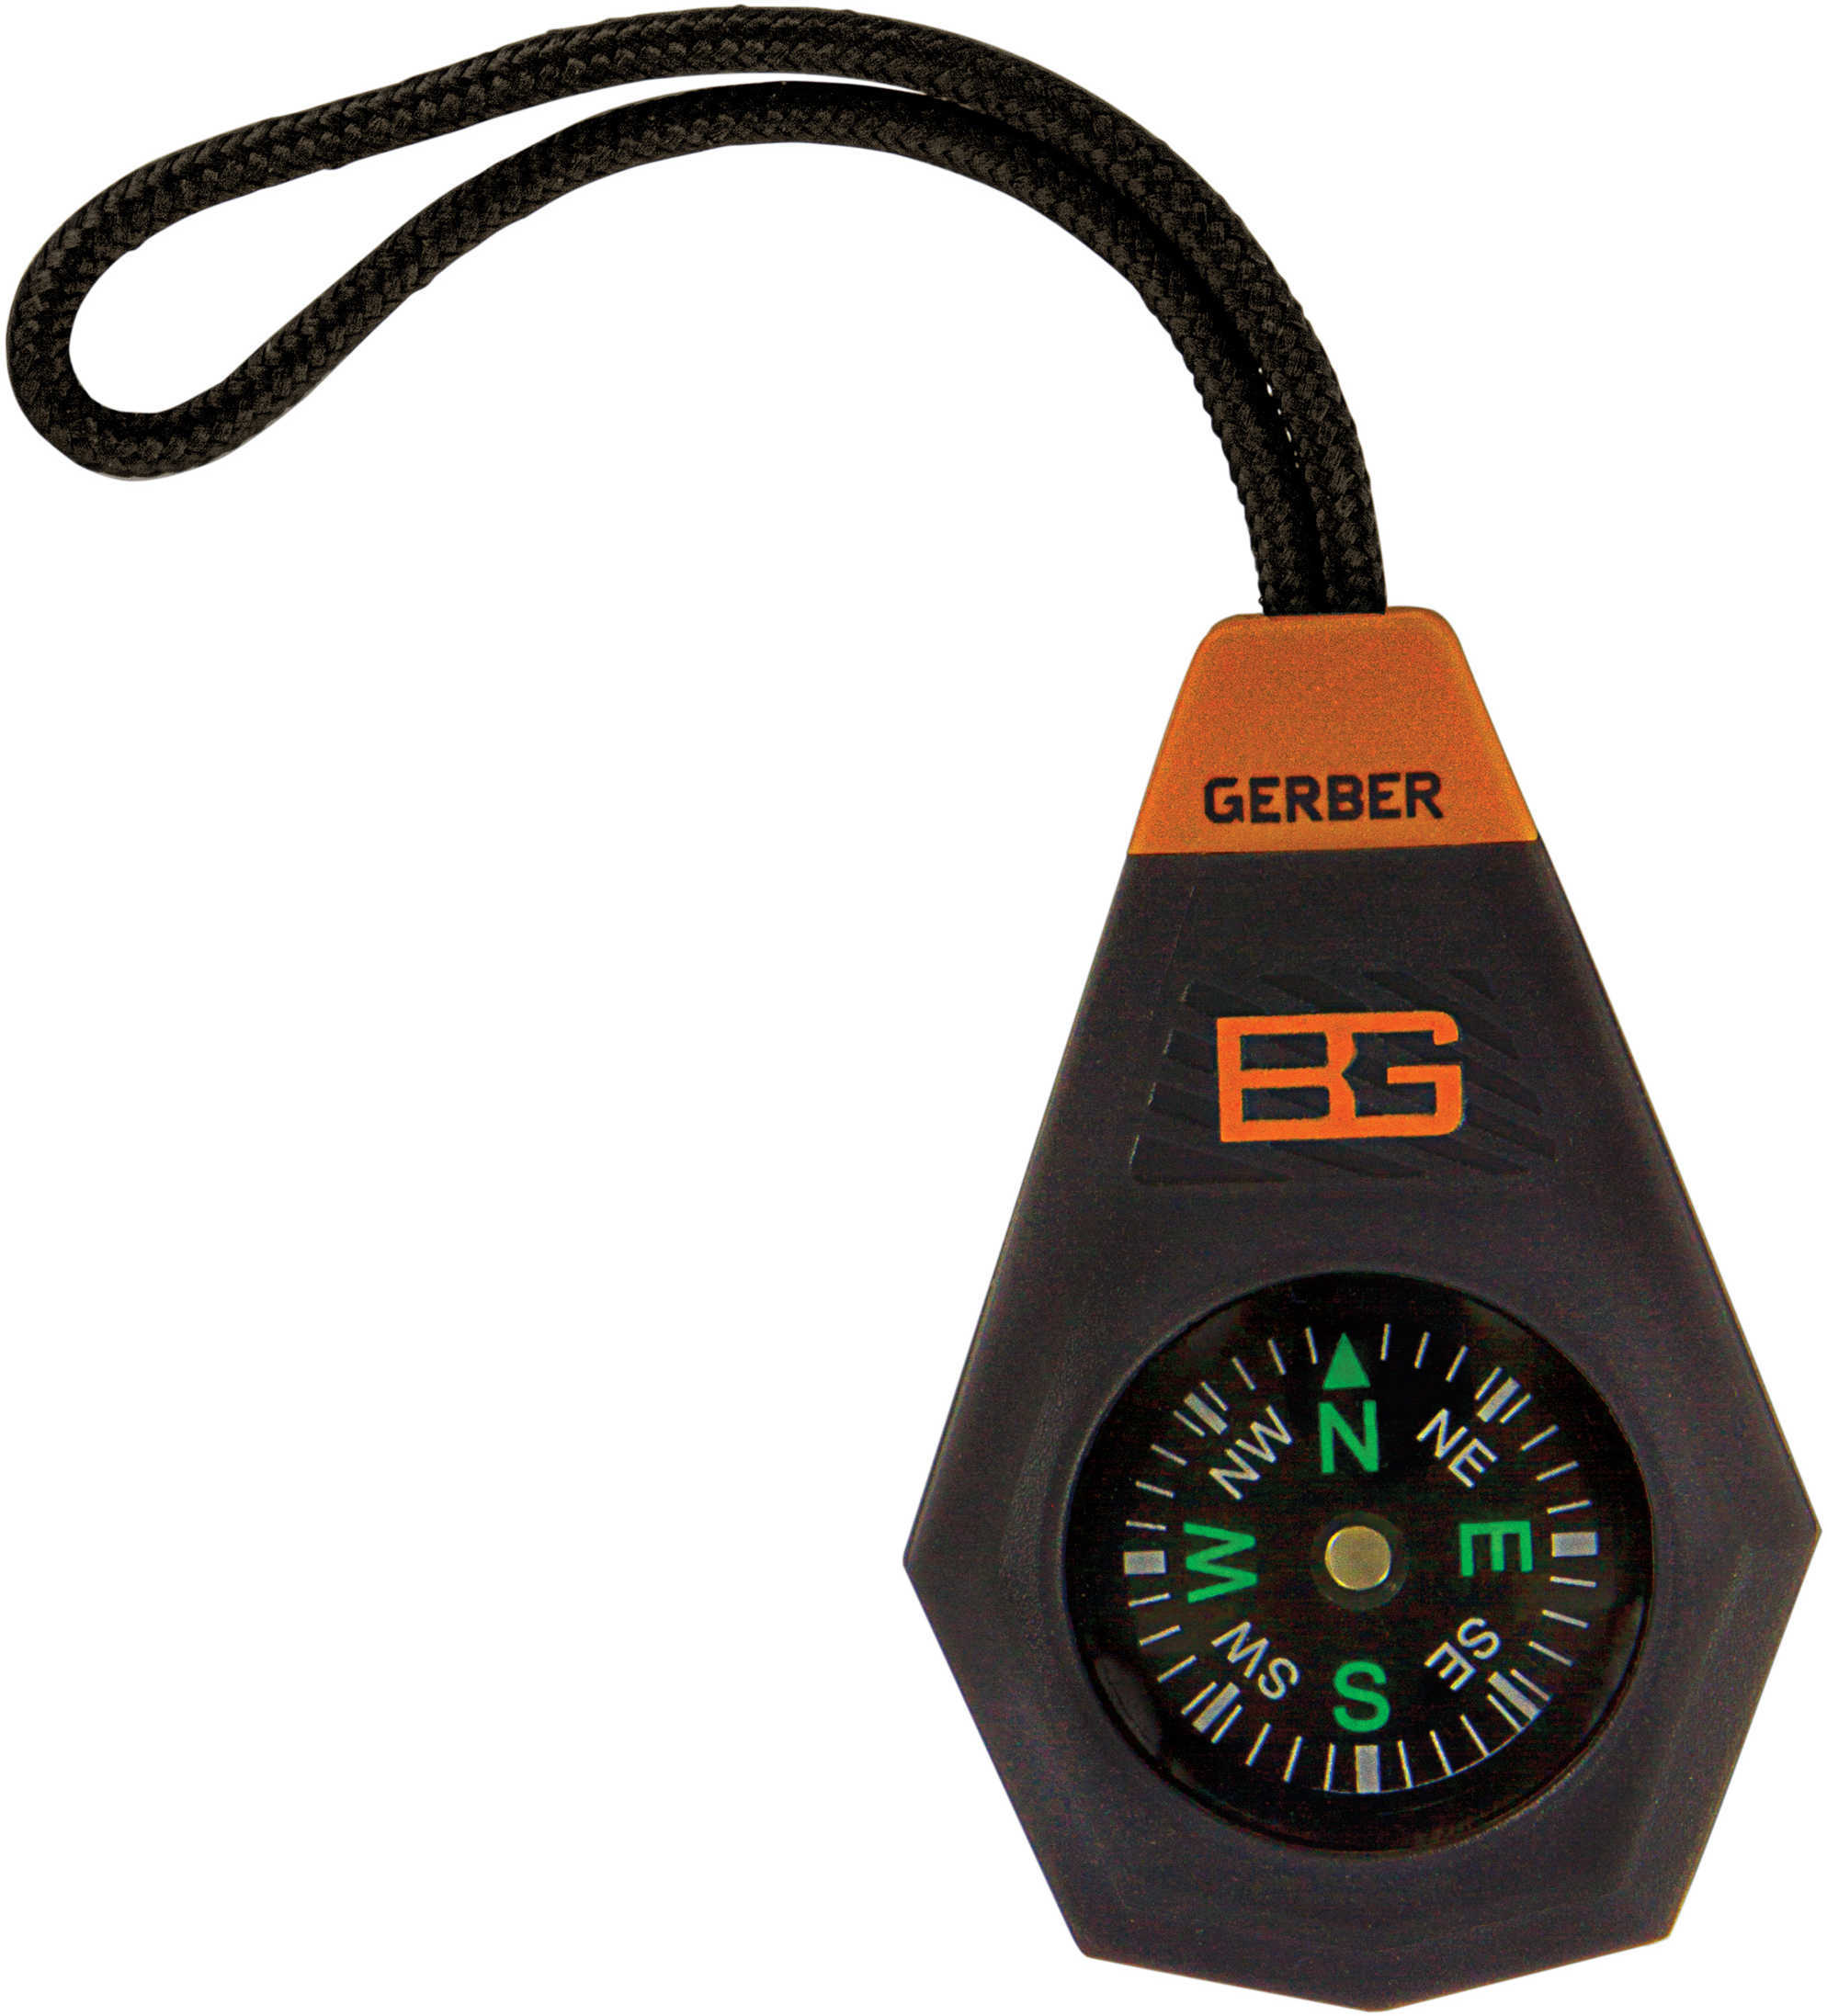 Gerber Blades Bear Grylls Series Compact Compass 31-001777